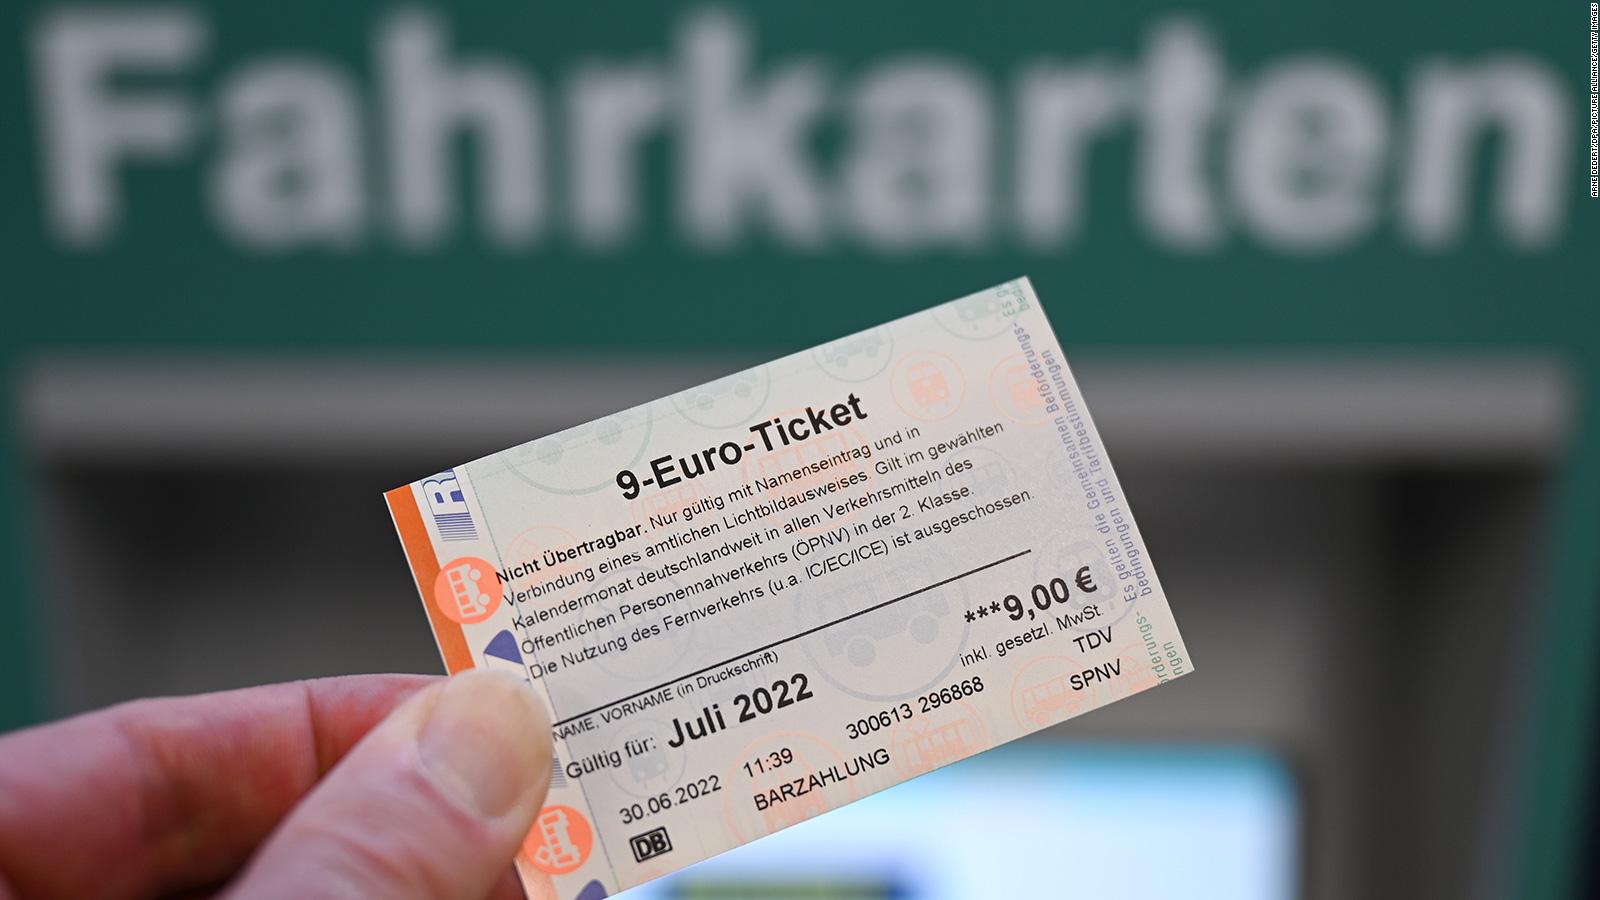 Chỉ với 9 euro, người dân Đức có thể đi tàu điện, xe buýt thoải mái trong 1 tháng. Ảnh: Getty Images